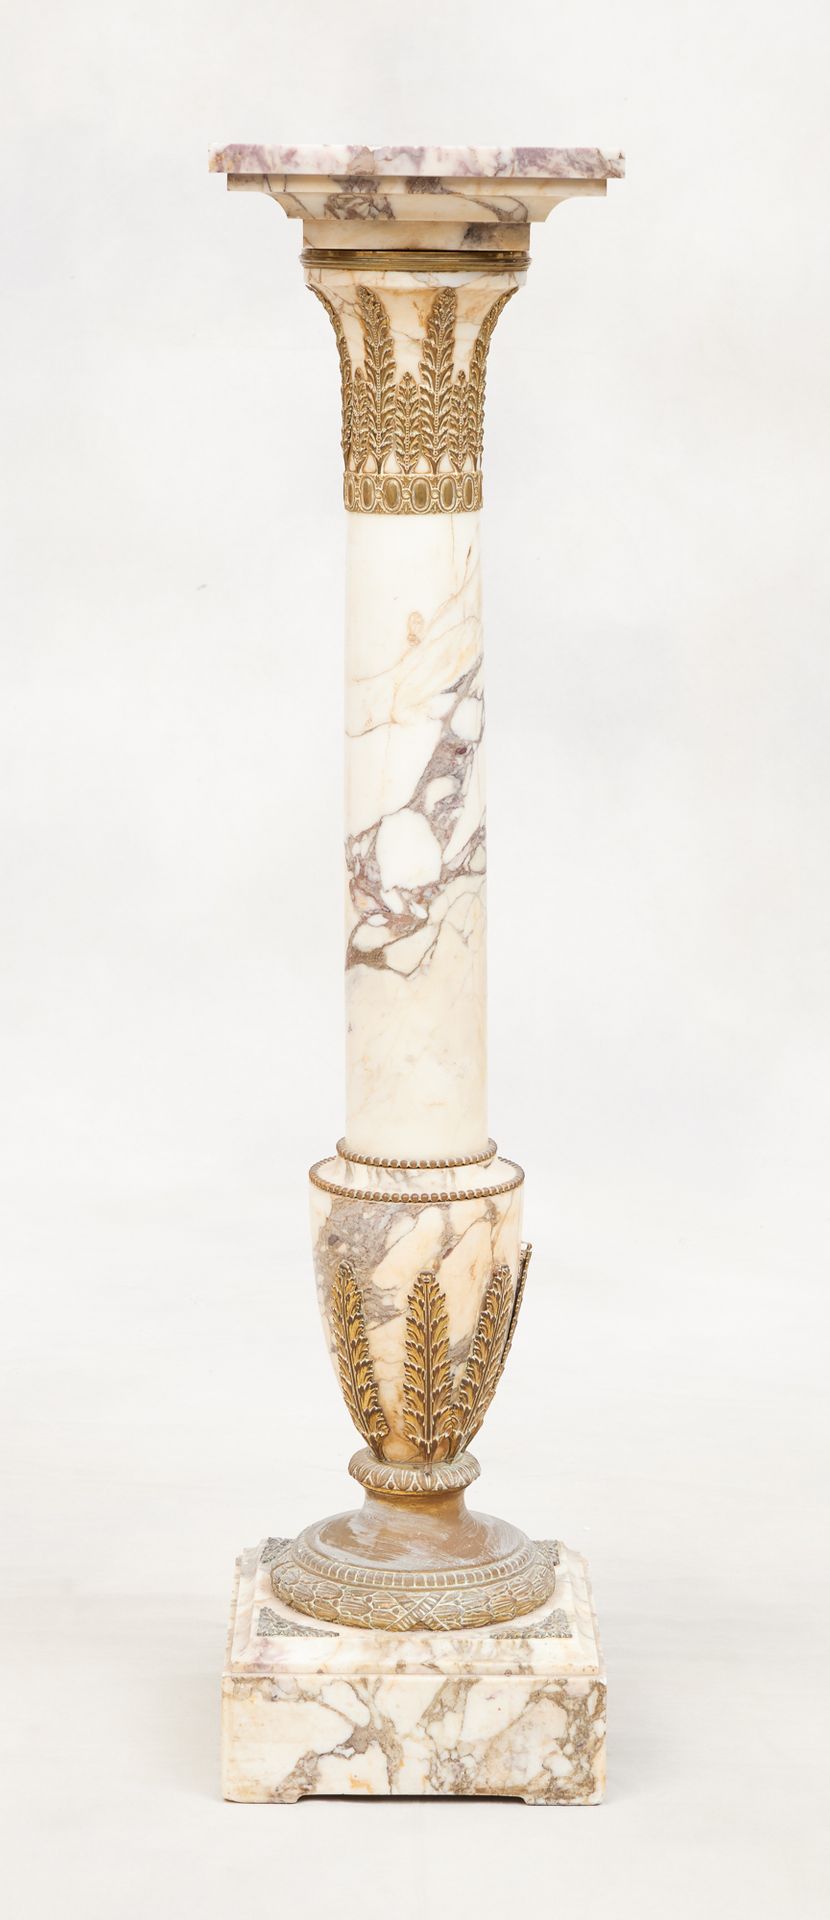 Circa 1900. Mueble: Columna de mármol con reflejos de bronce dorado.
Altura: 112&hellip;